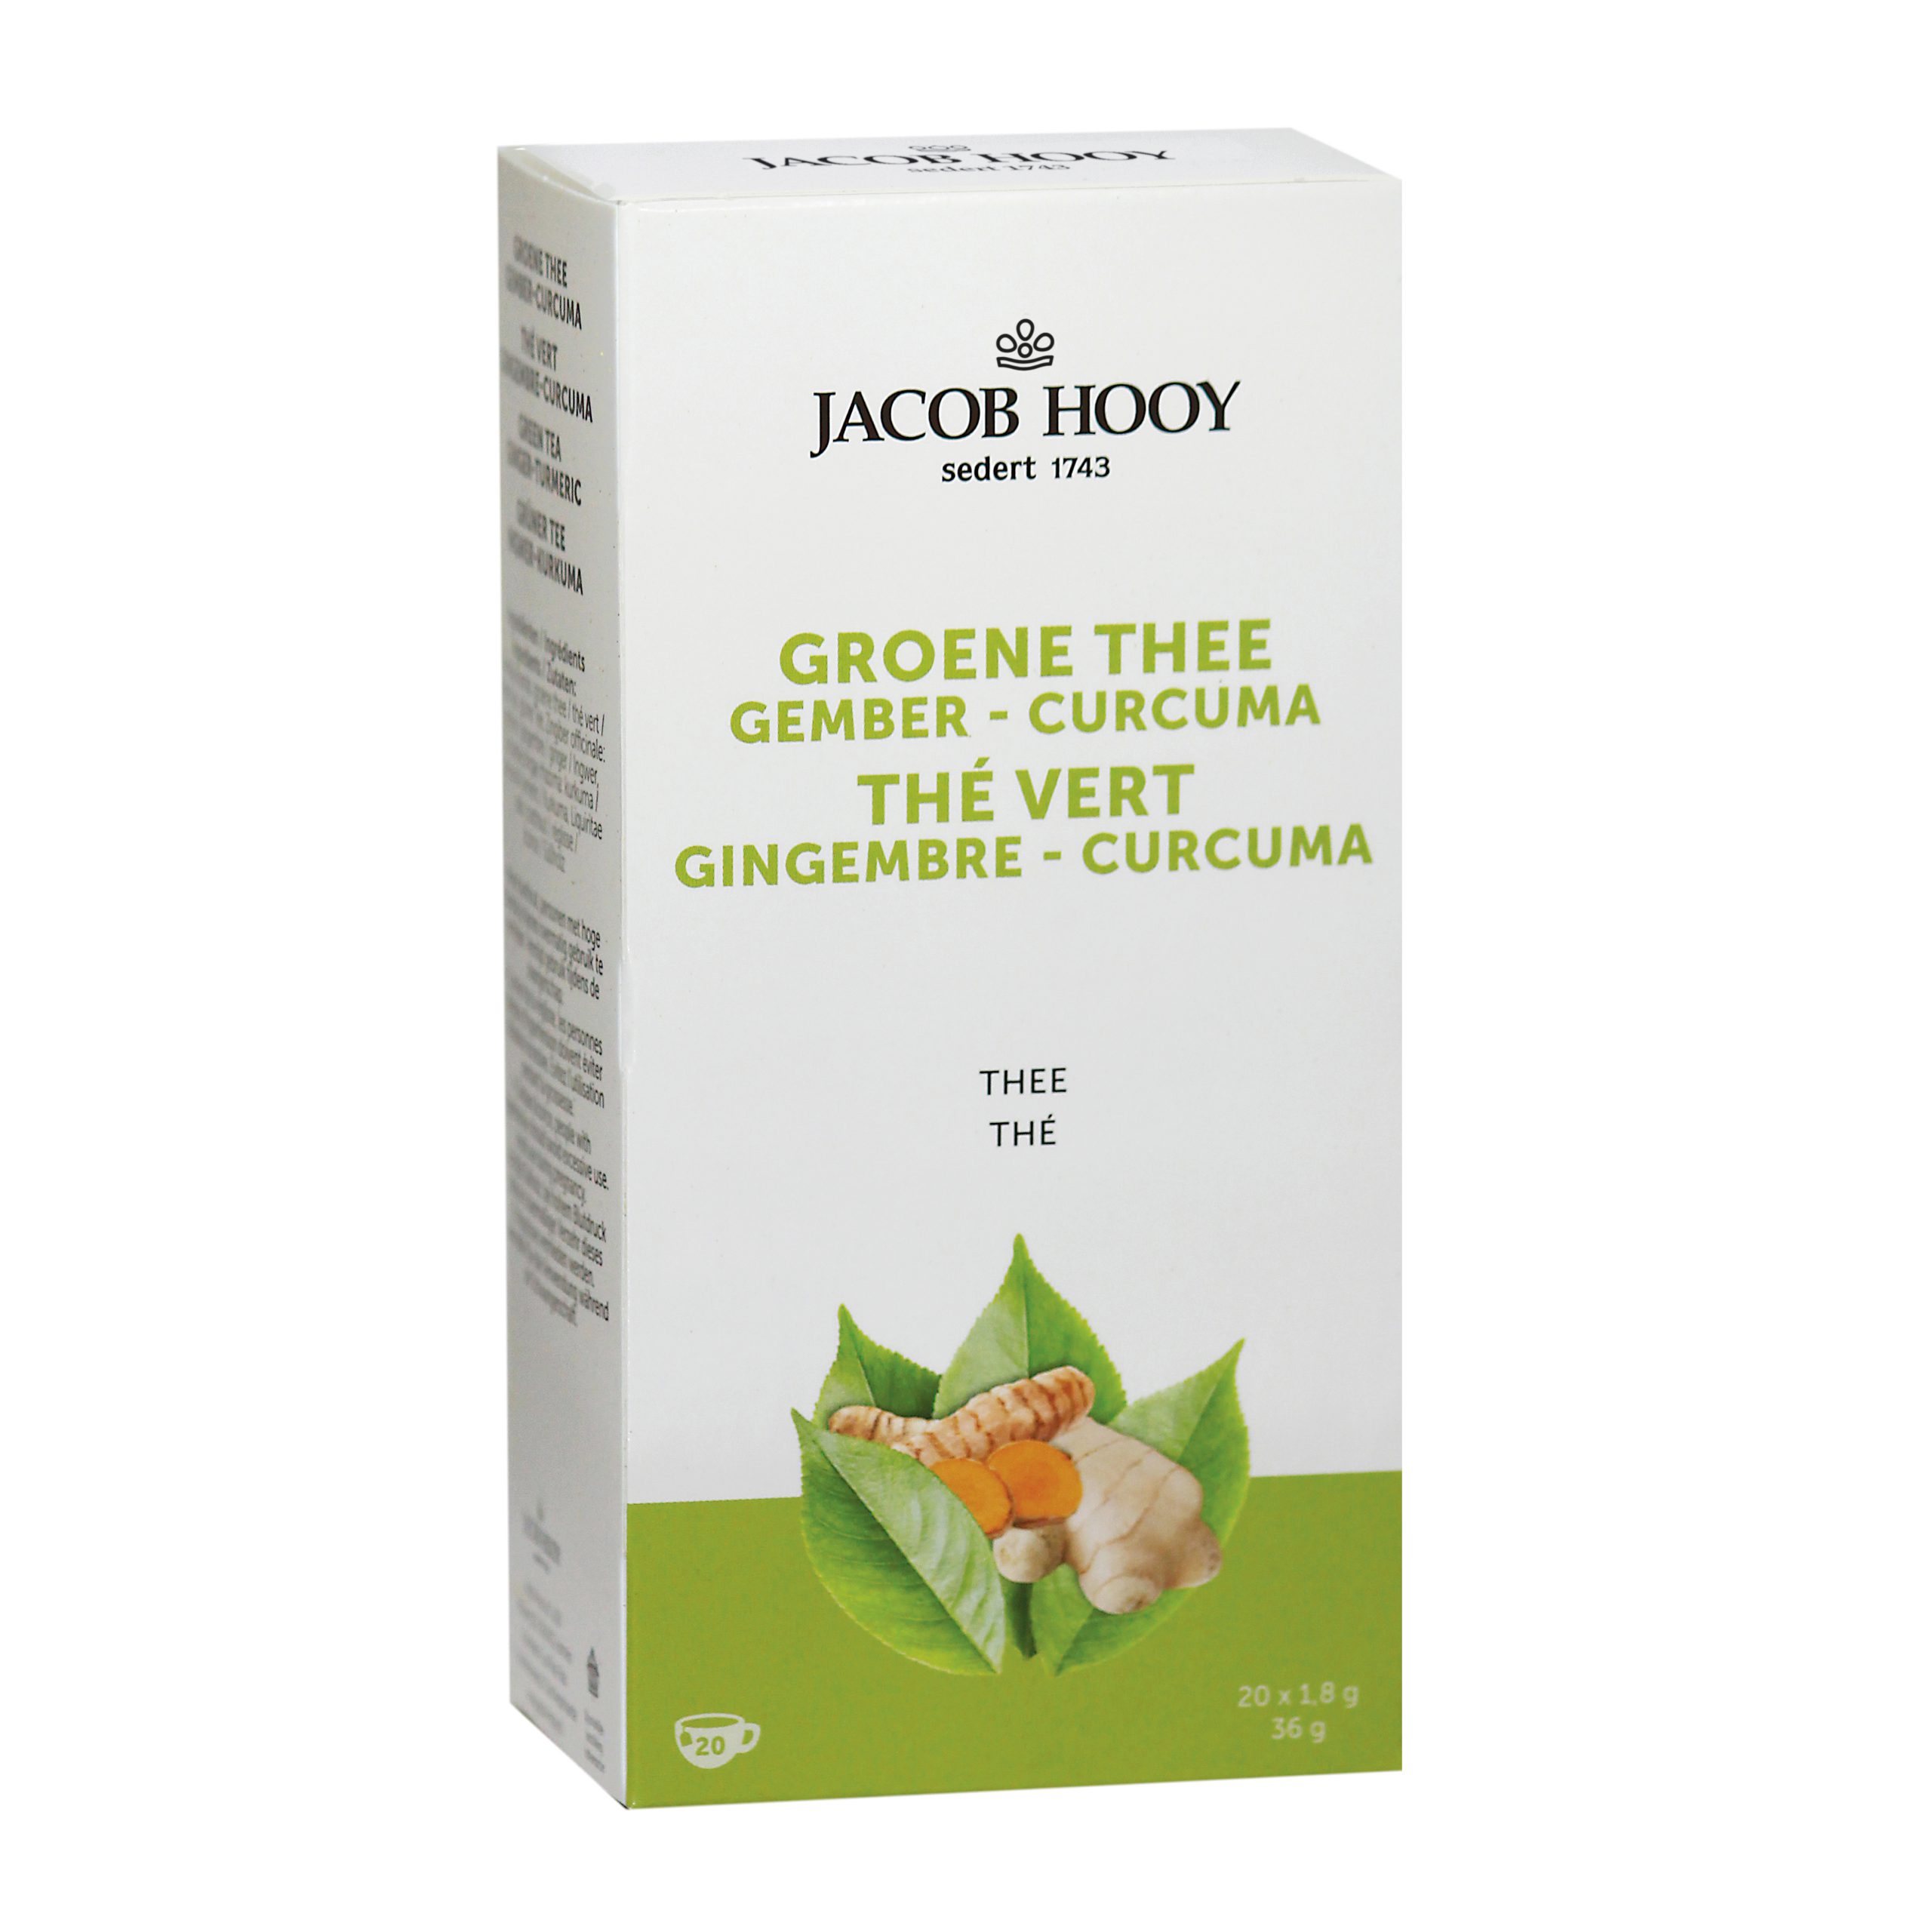 Groene thee Gember – Curcuma